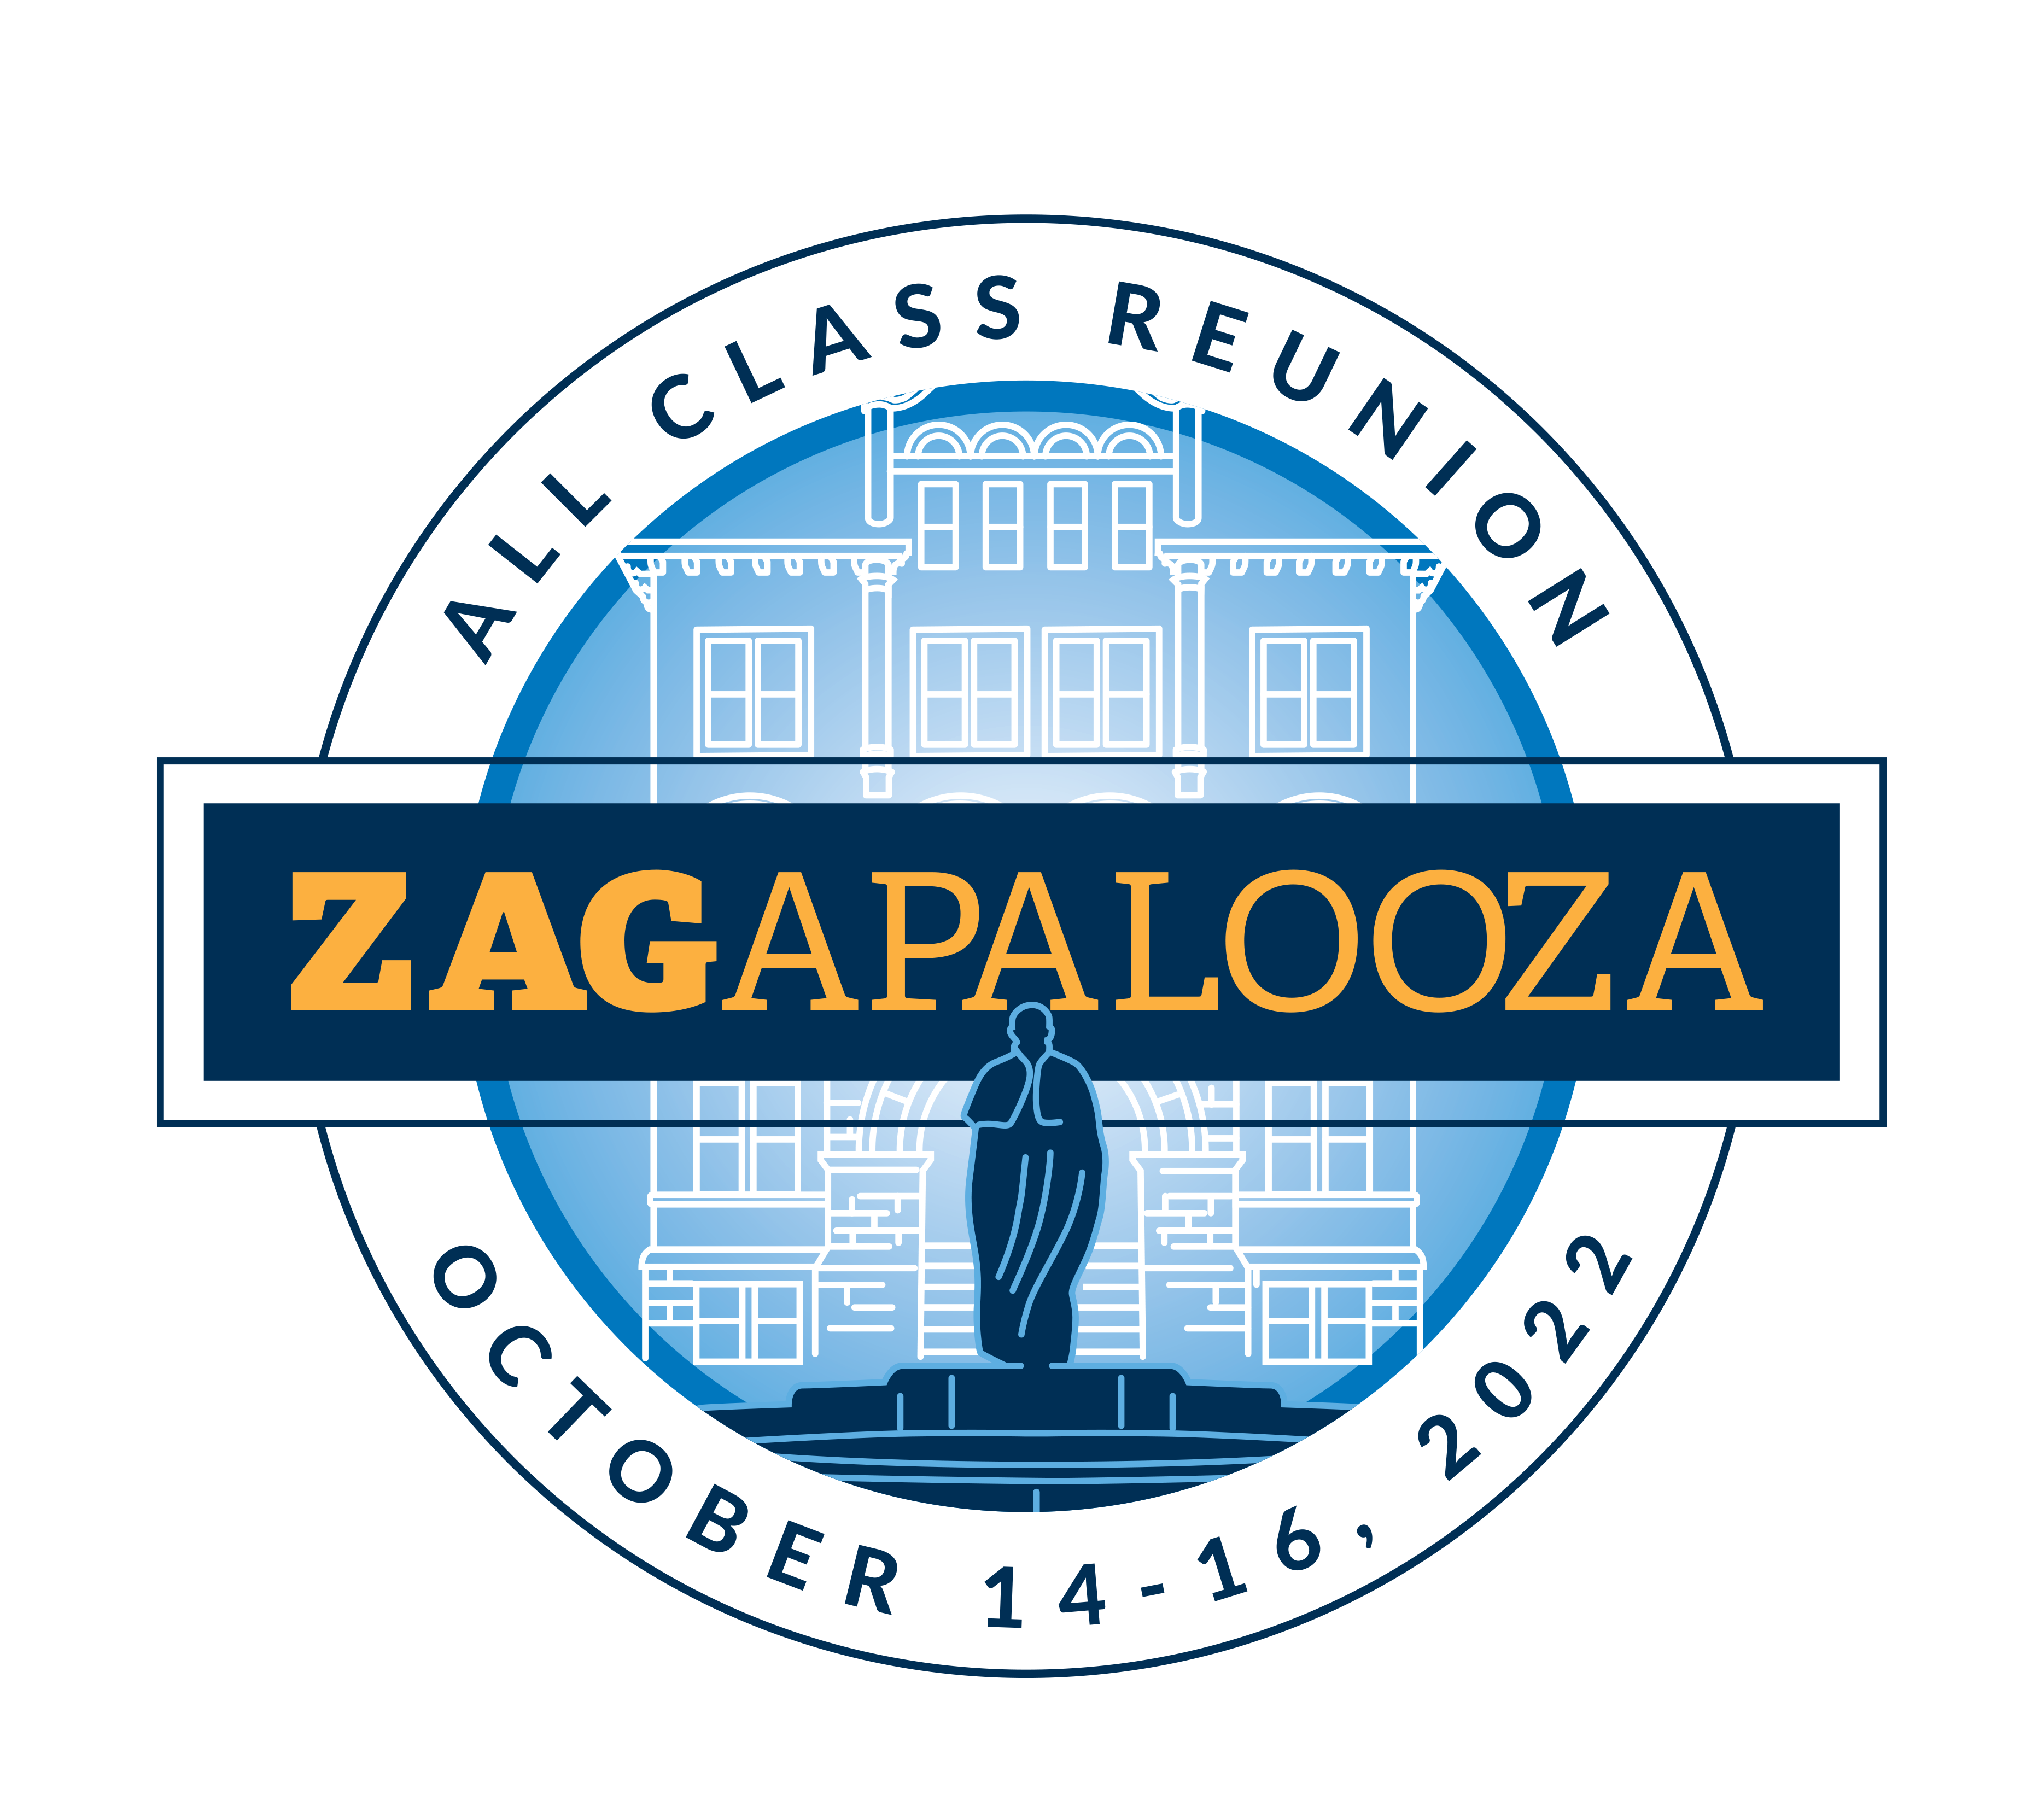 ZAGAPALOOZA All Class Reunion October 14-16, 2022